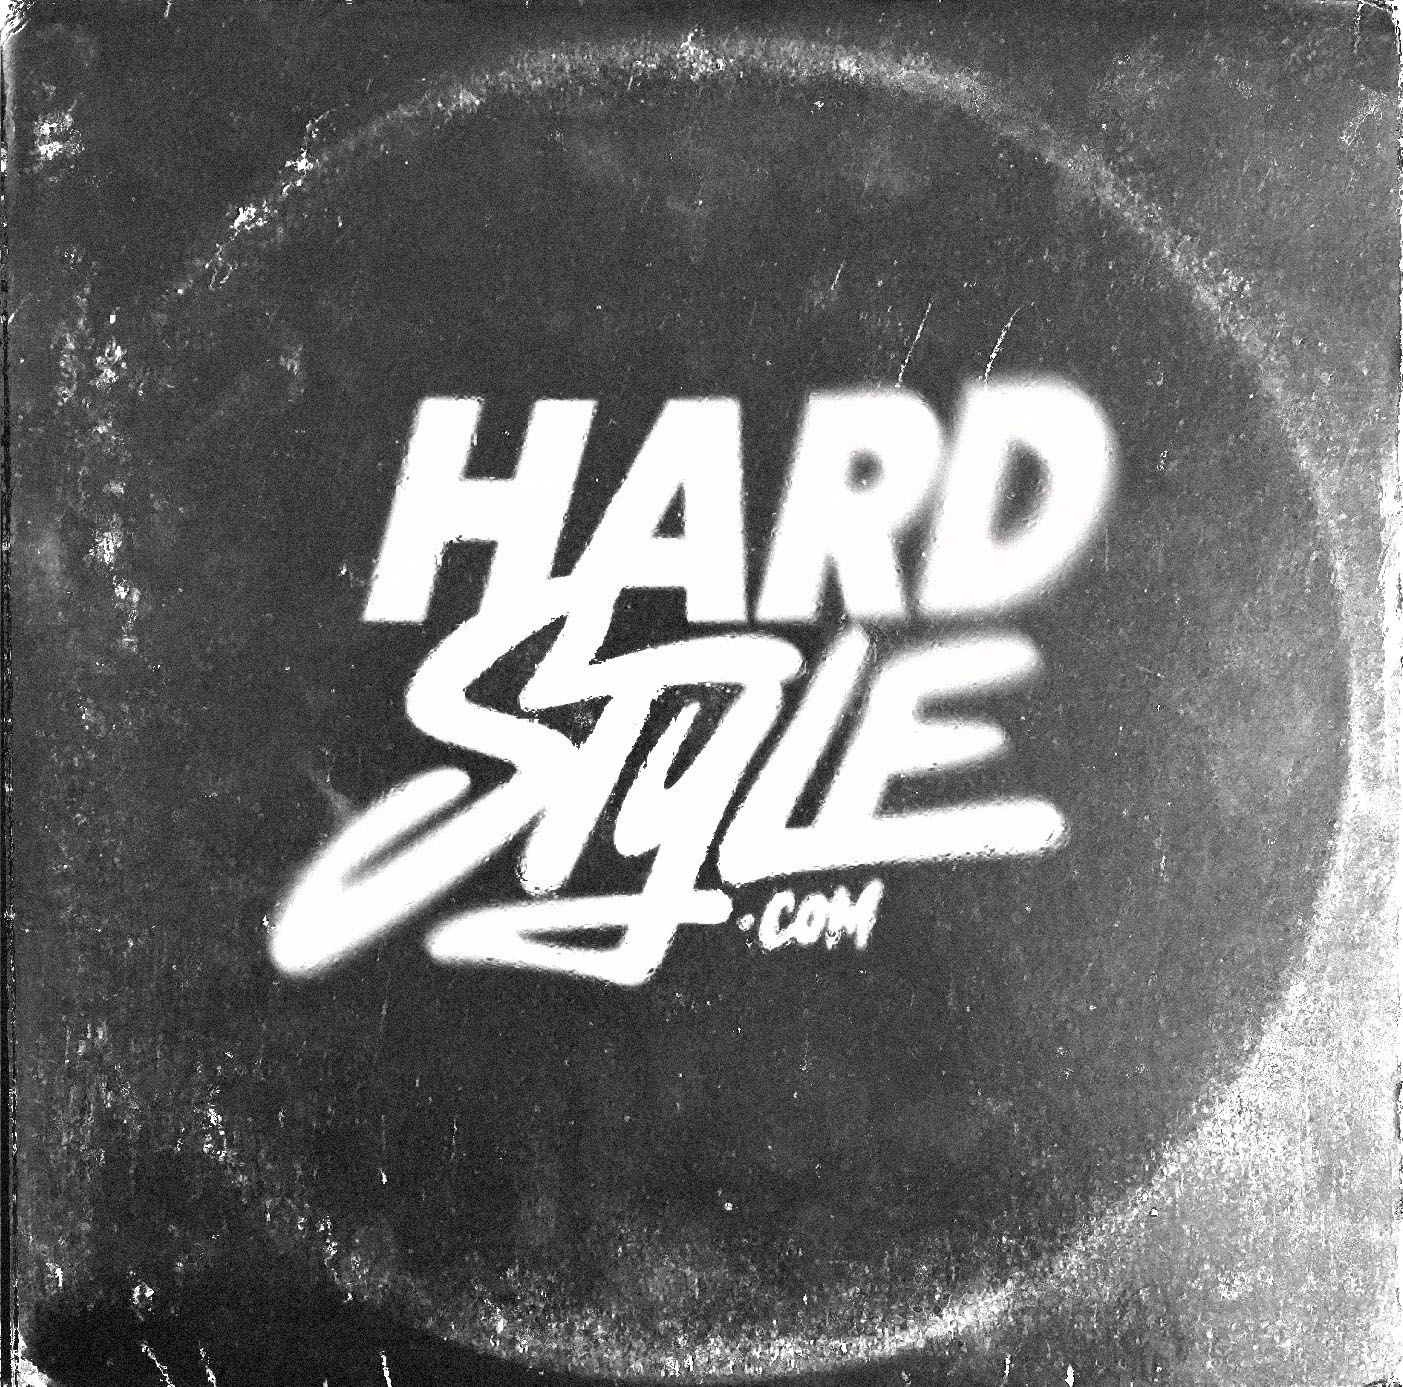 No Turning Back (Hardstyle Remixes)